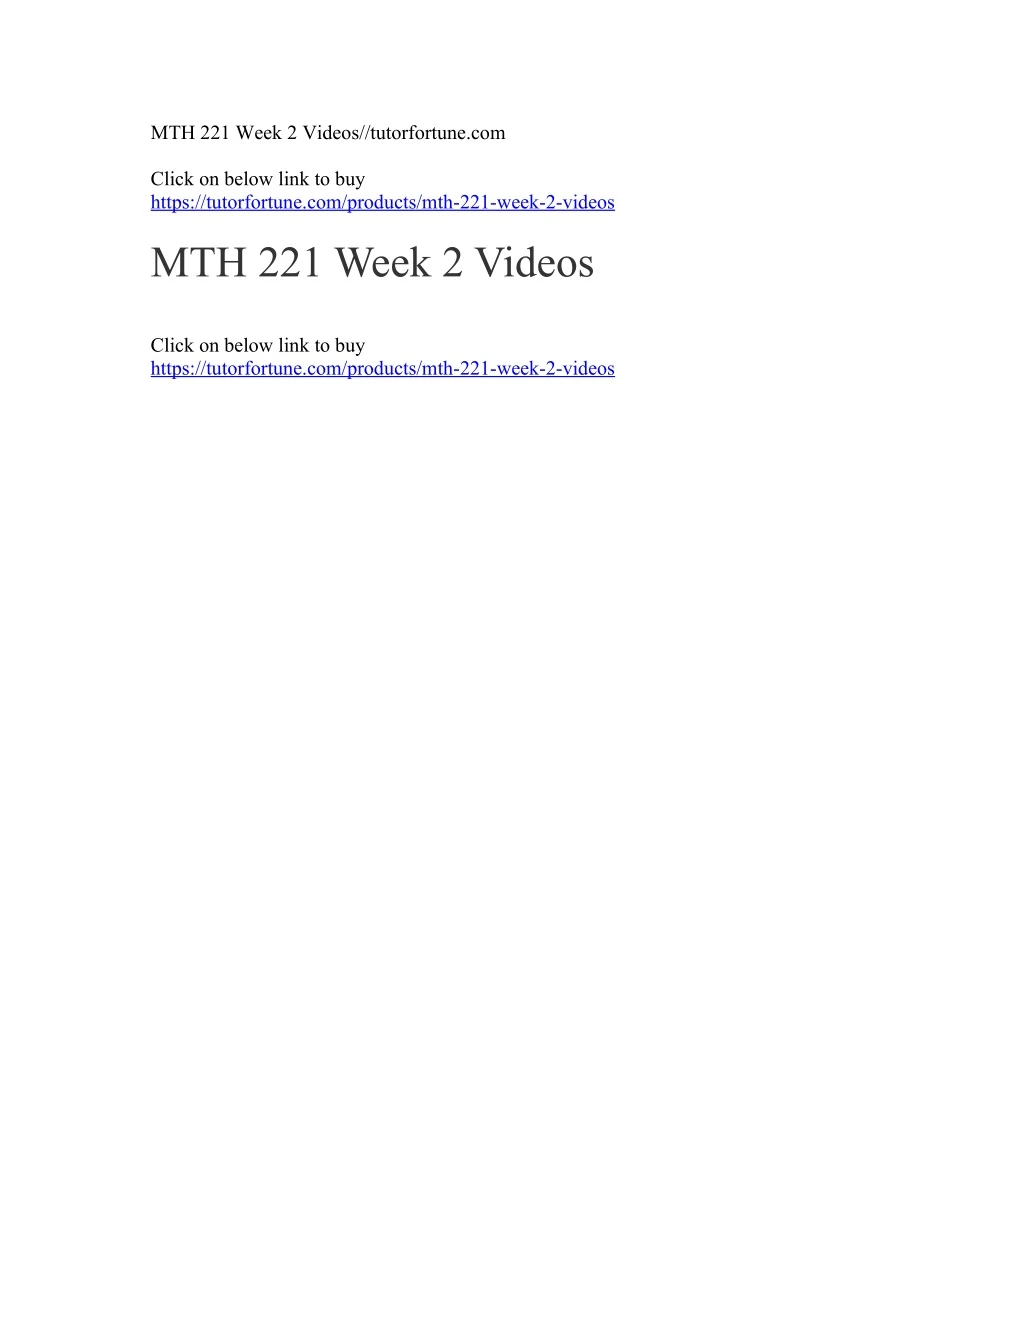 mth 221 week 2 videos tutorfortune com